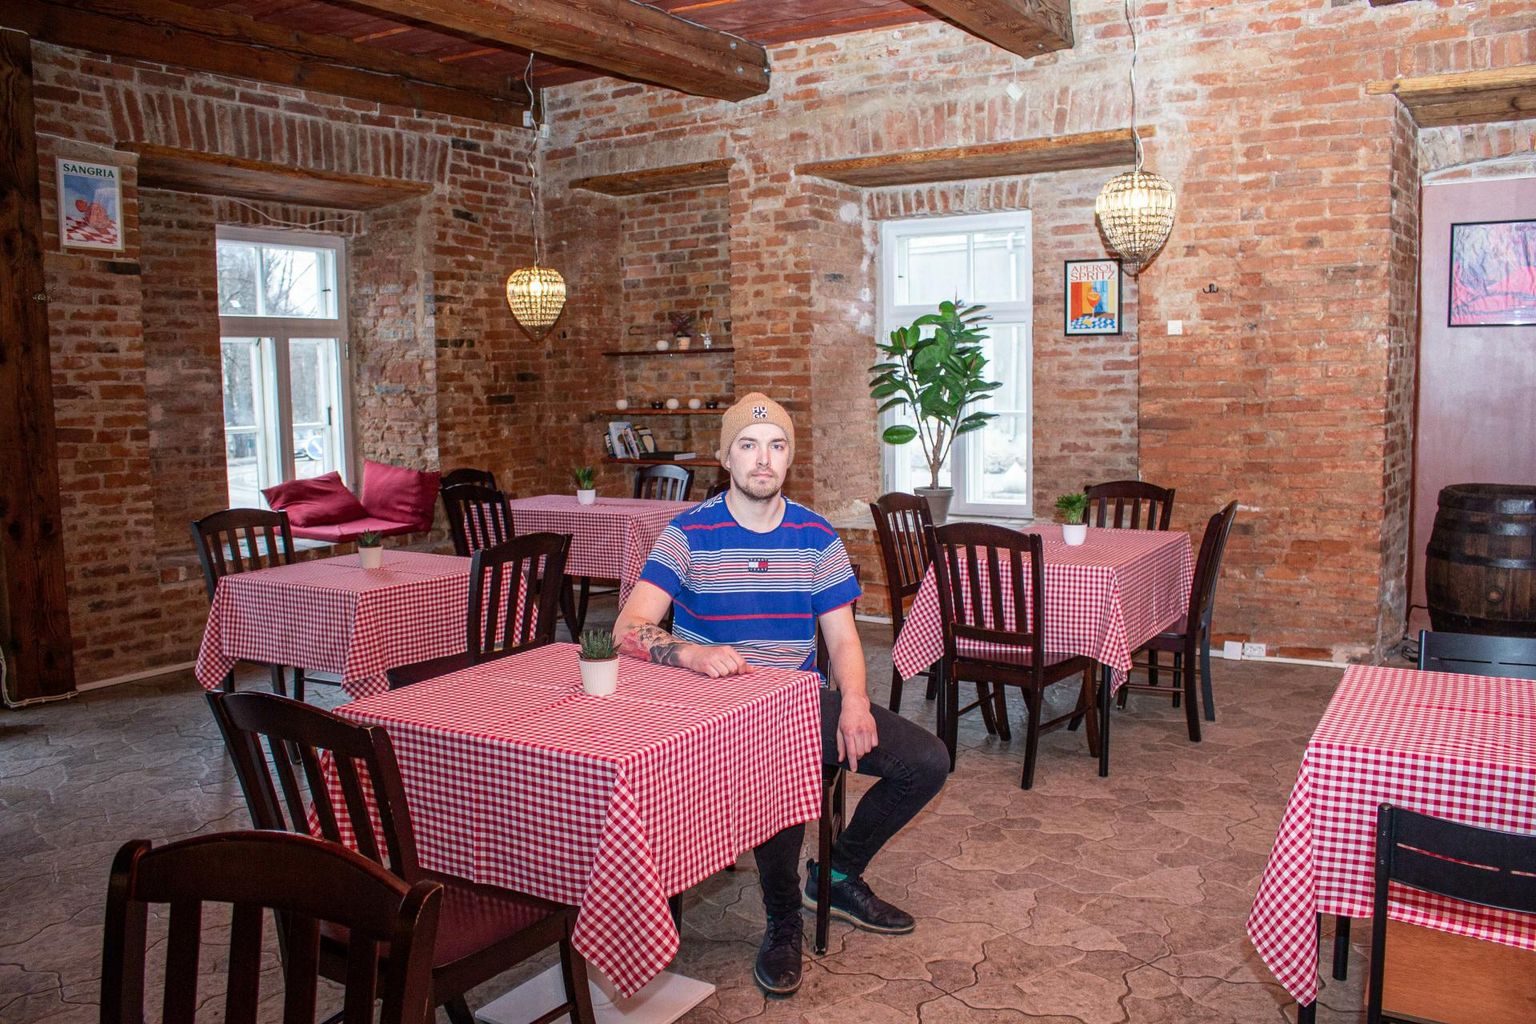 Рандель Мальм, который ранее работал поваром и шеф-поваров в нескольких известных ресторанах, открыл в своем родном городе ресторан-пиццерию Malmizza.